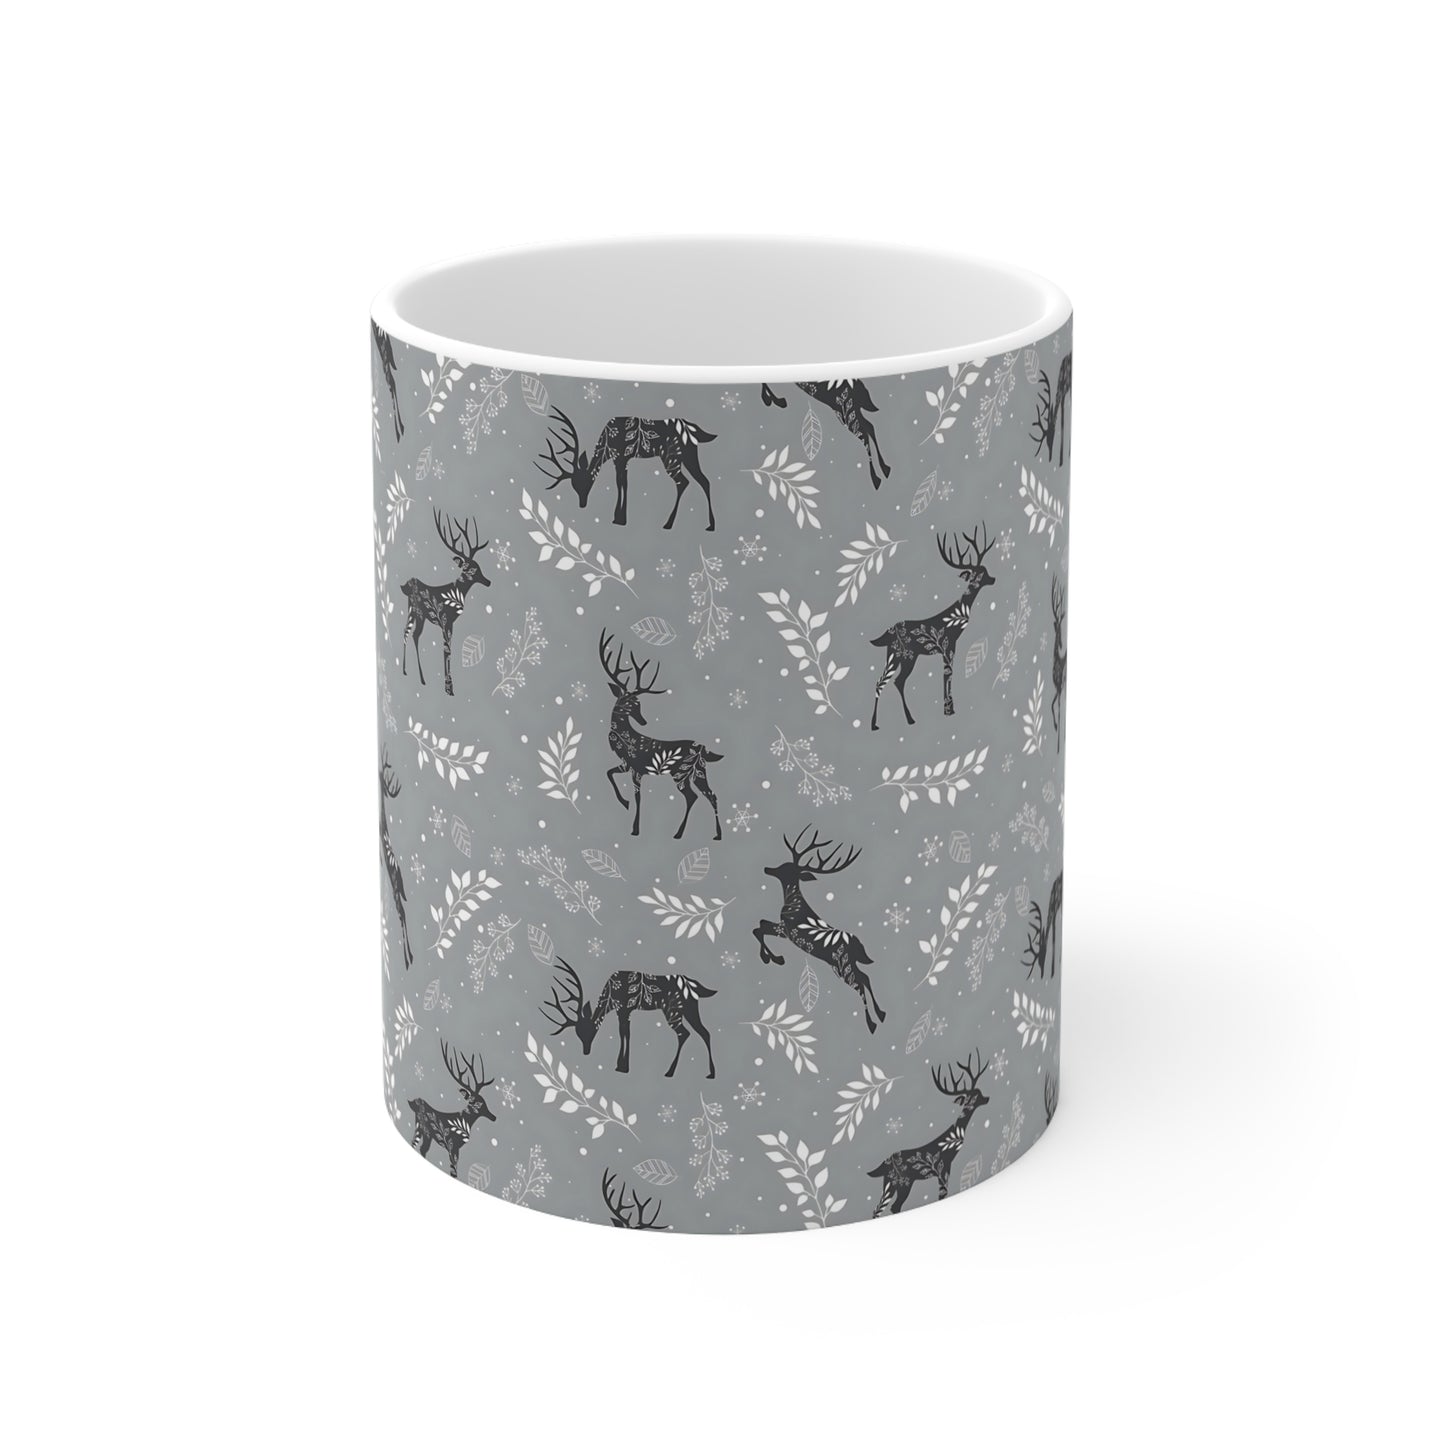 Reindeer #3 Ceramic Mug, 11oz